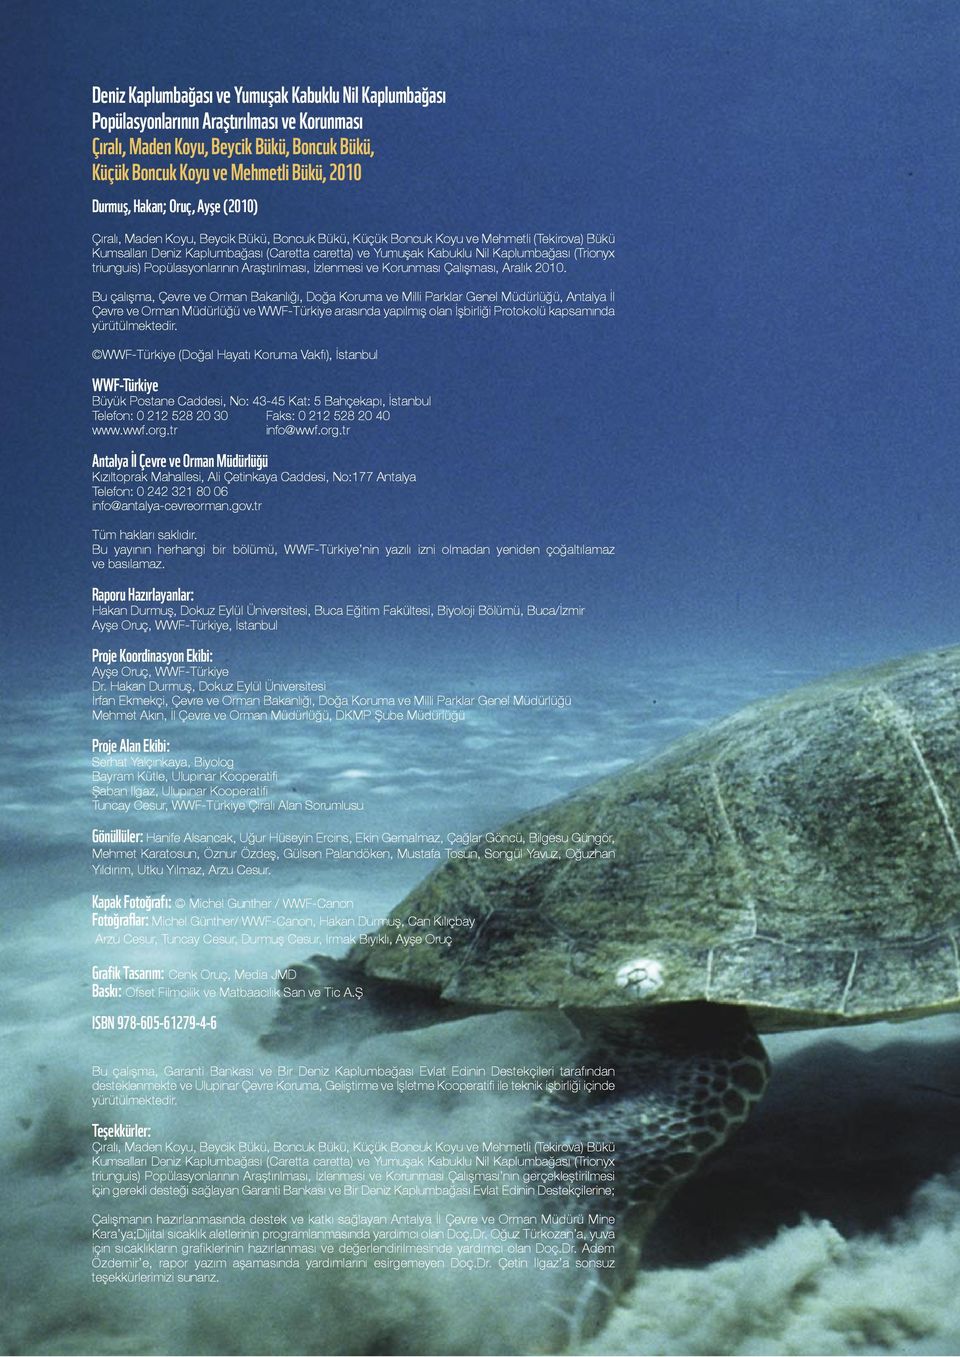 Kaplumbağası (Trionyx triunguis) Popülasyonlarının Araştırılması, İzlenmesi ve Korunması Çalışması, Aralık 2010.